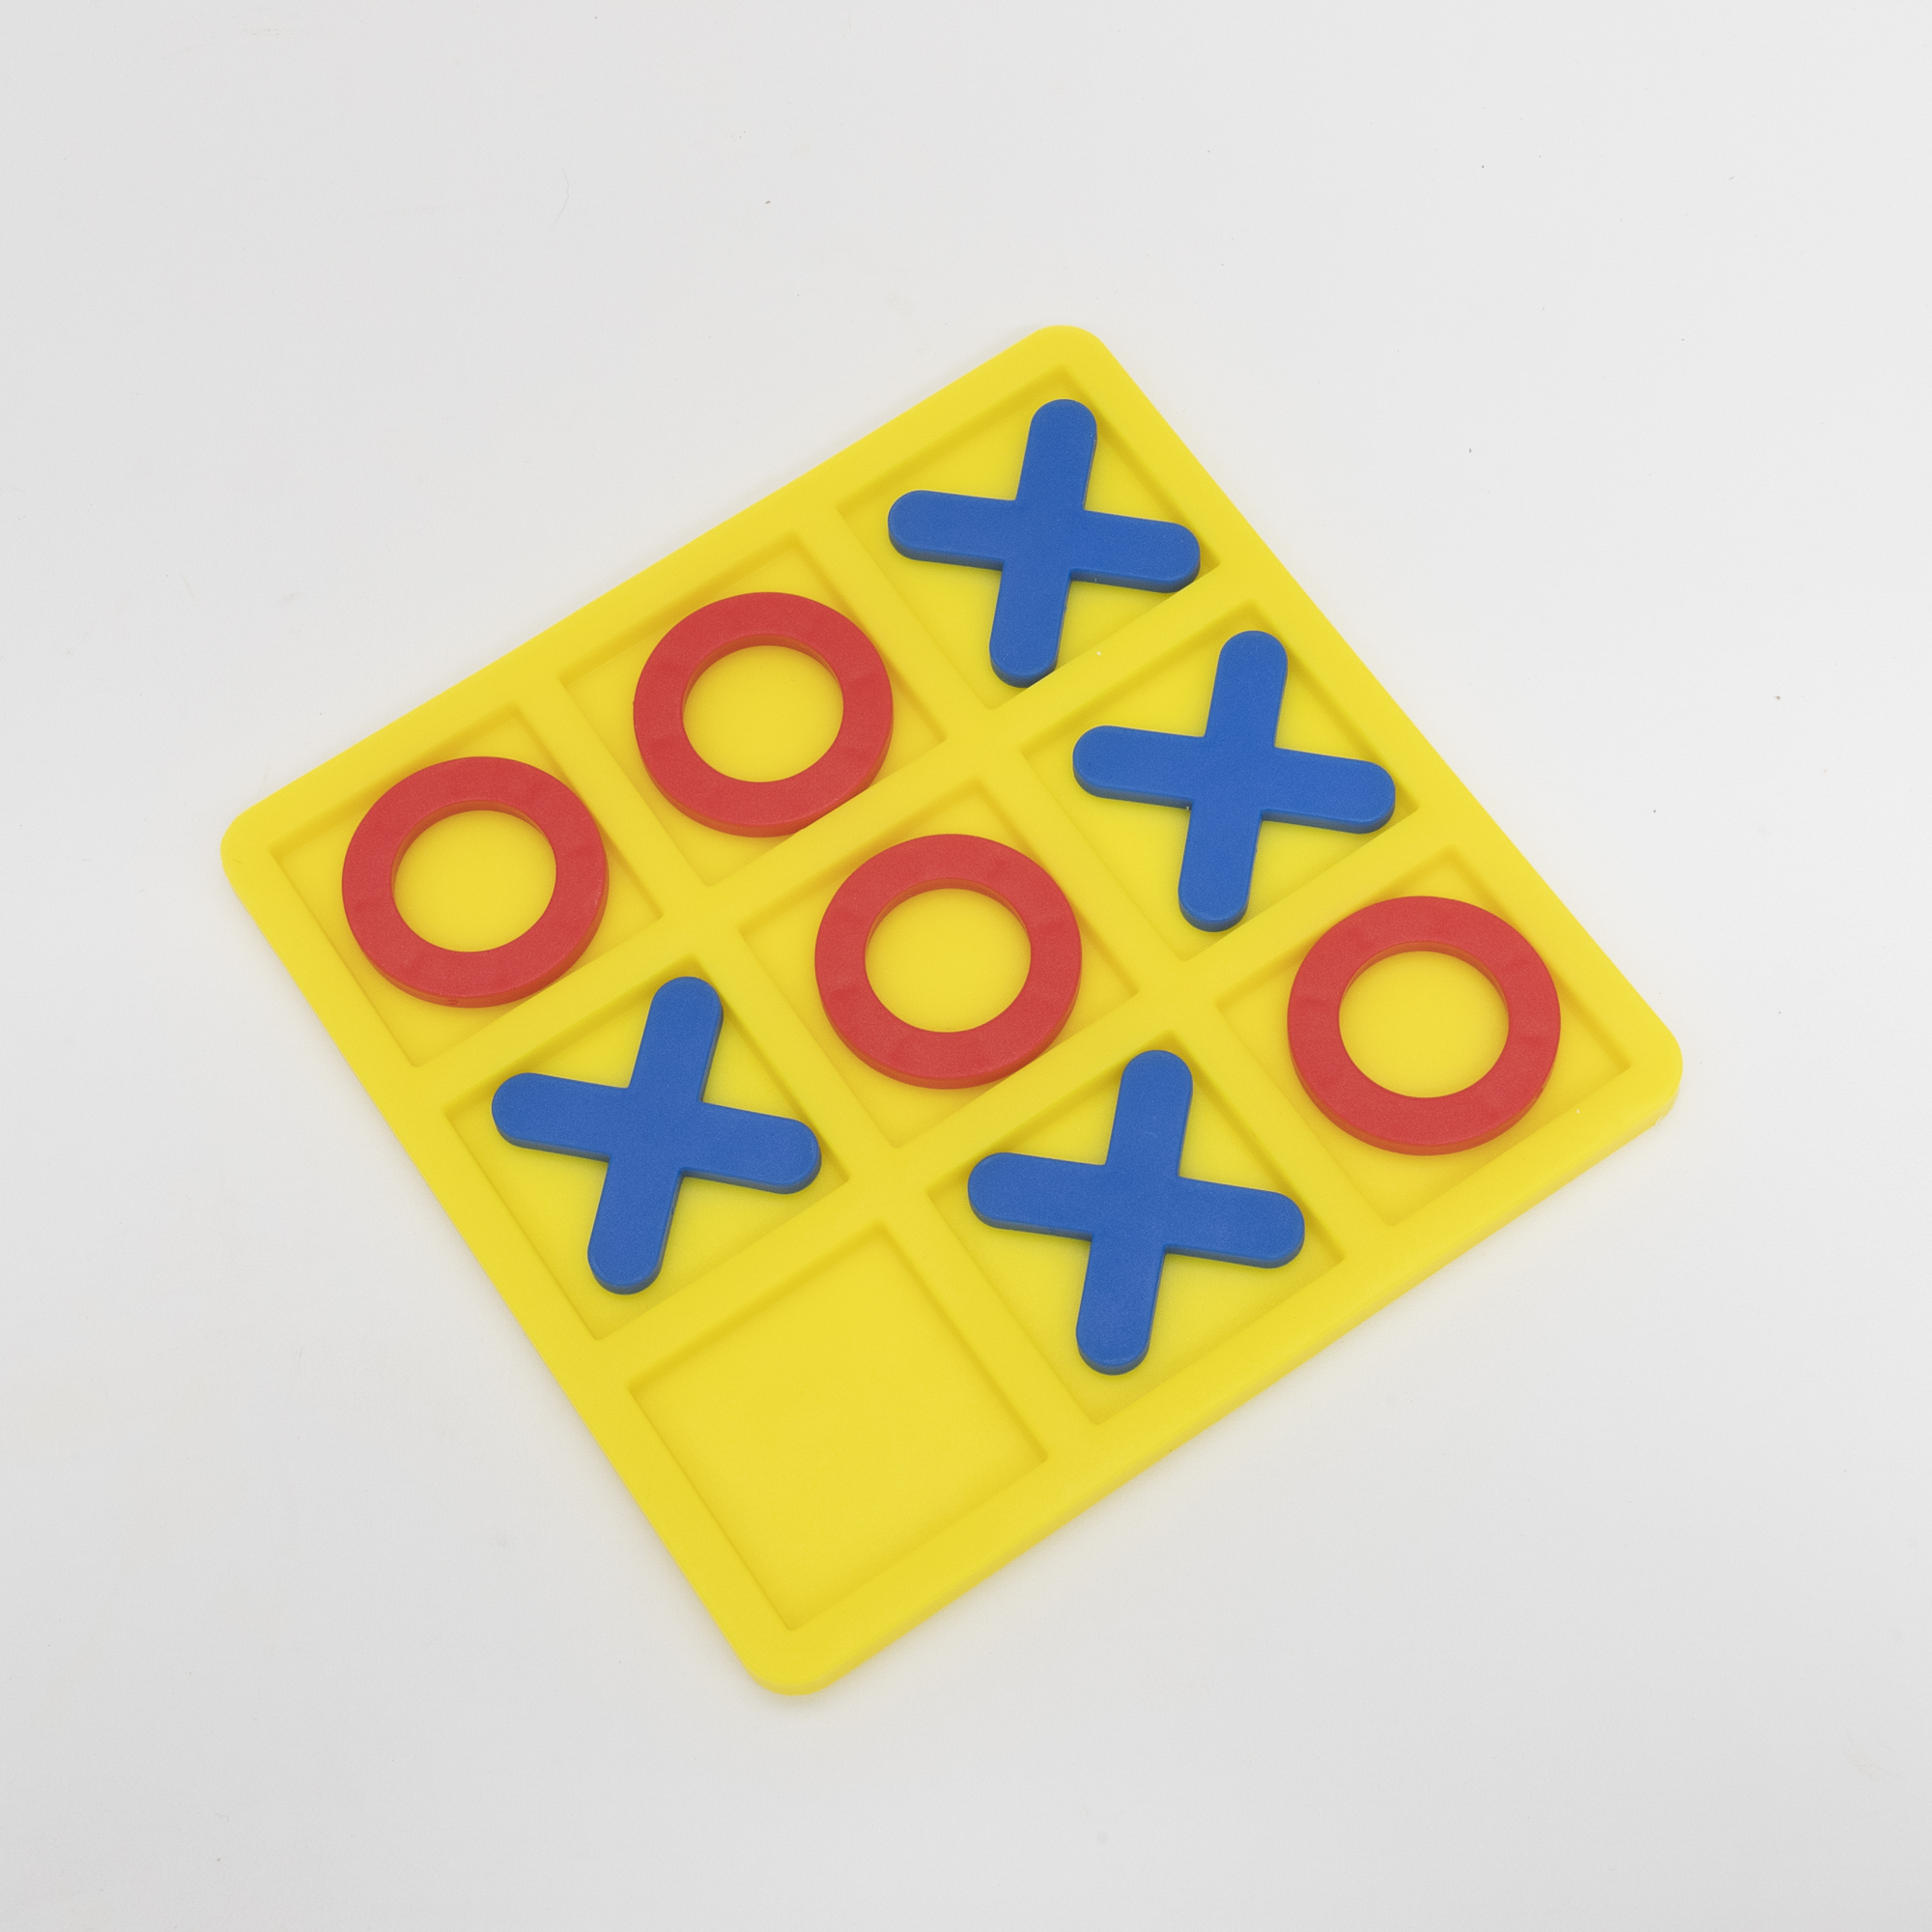 『知育玩具』Tic-tac-toeパズルボードゲームおもちゃ｜脳を鍛える三目並べ|undefined